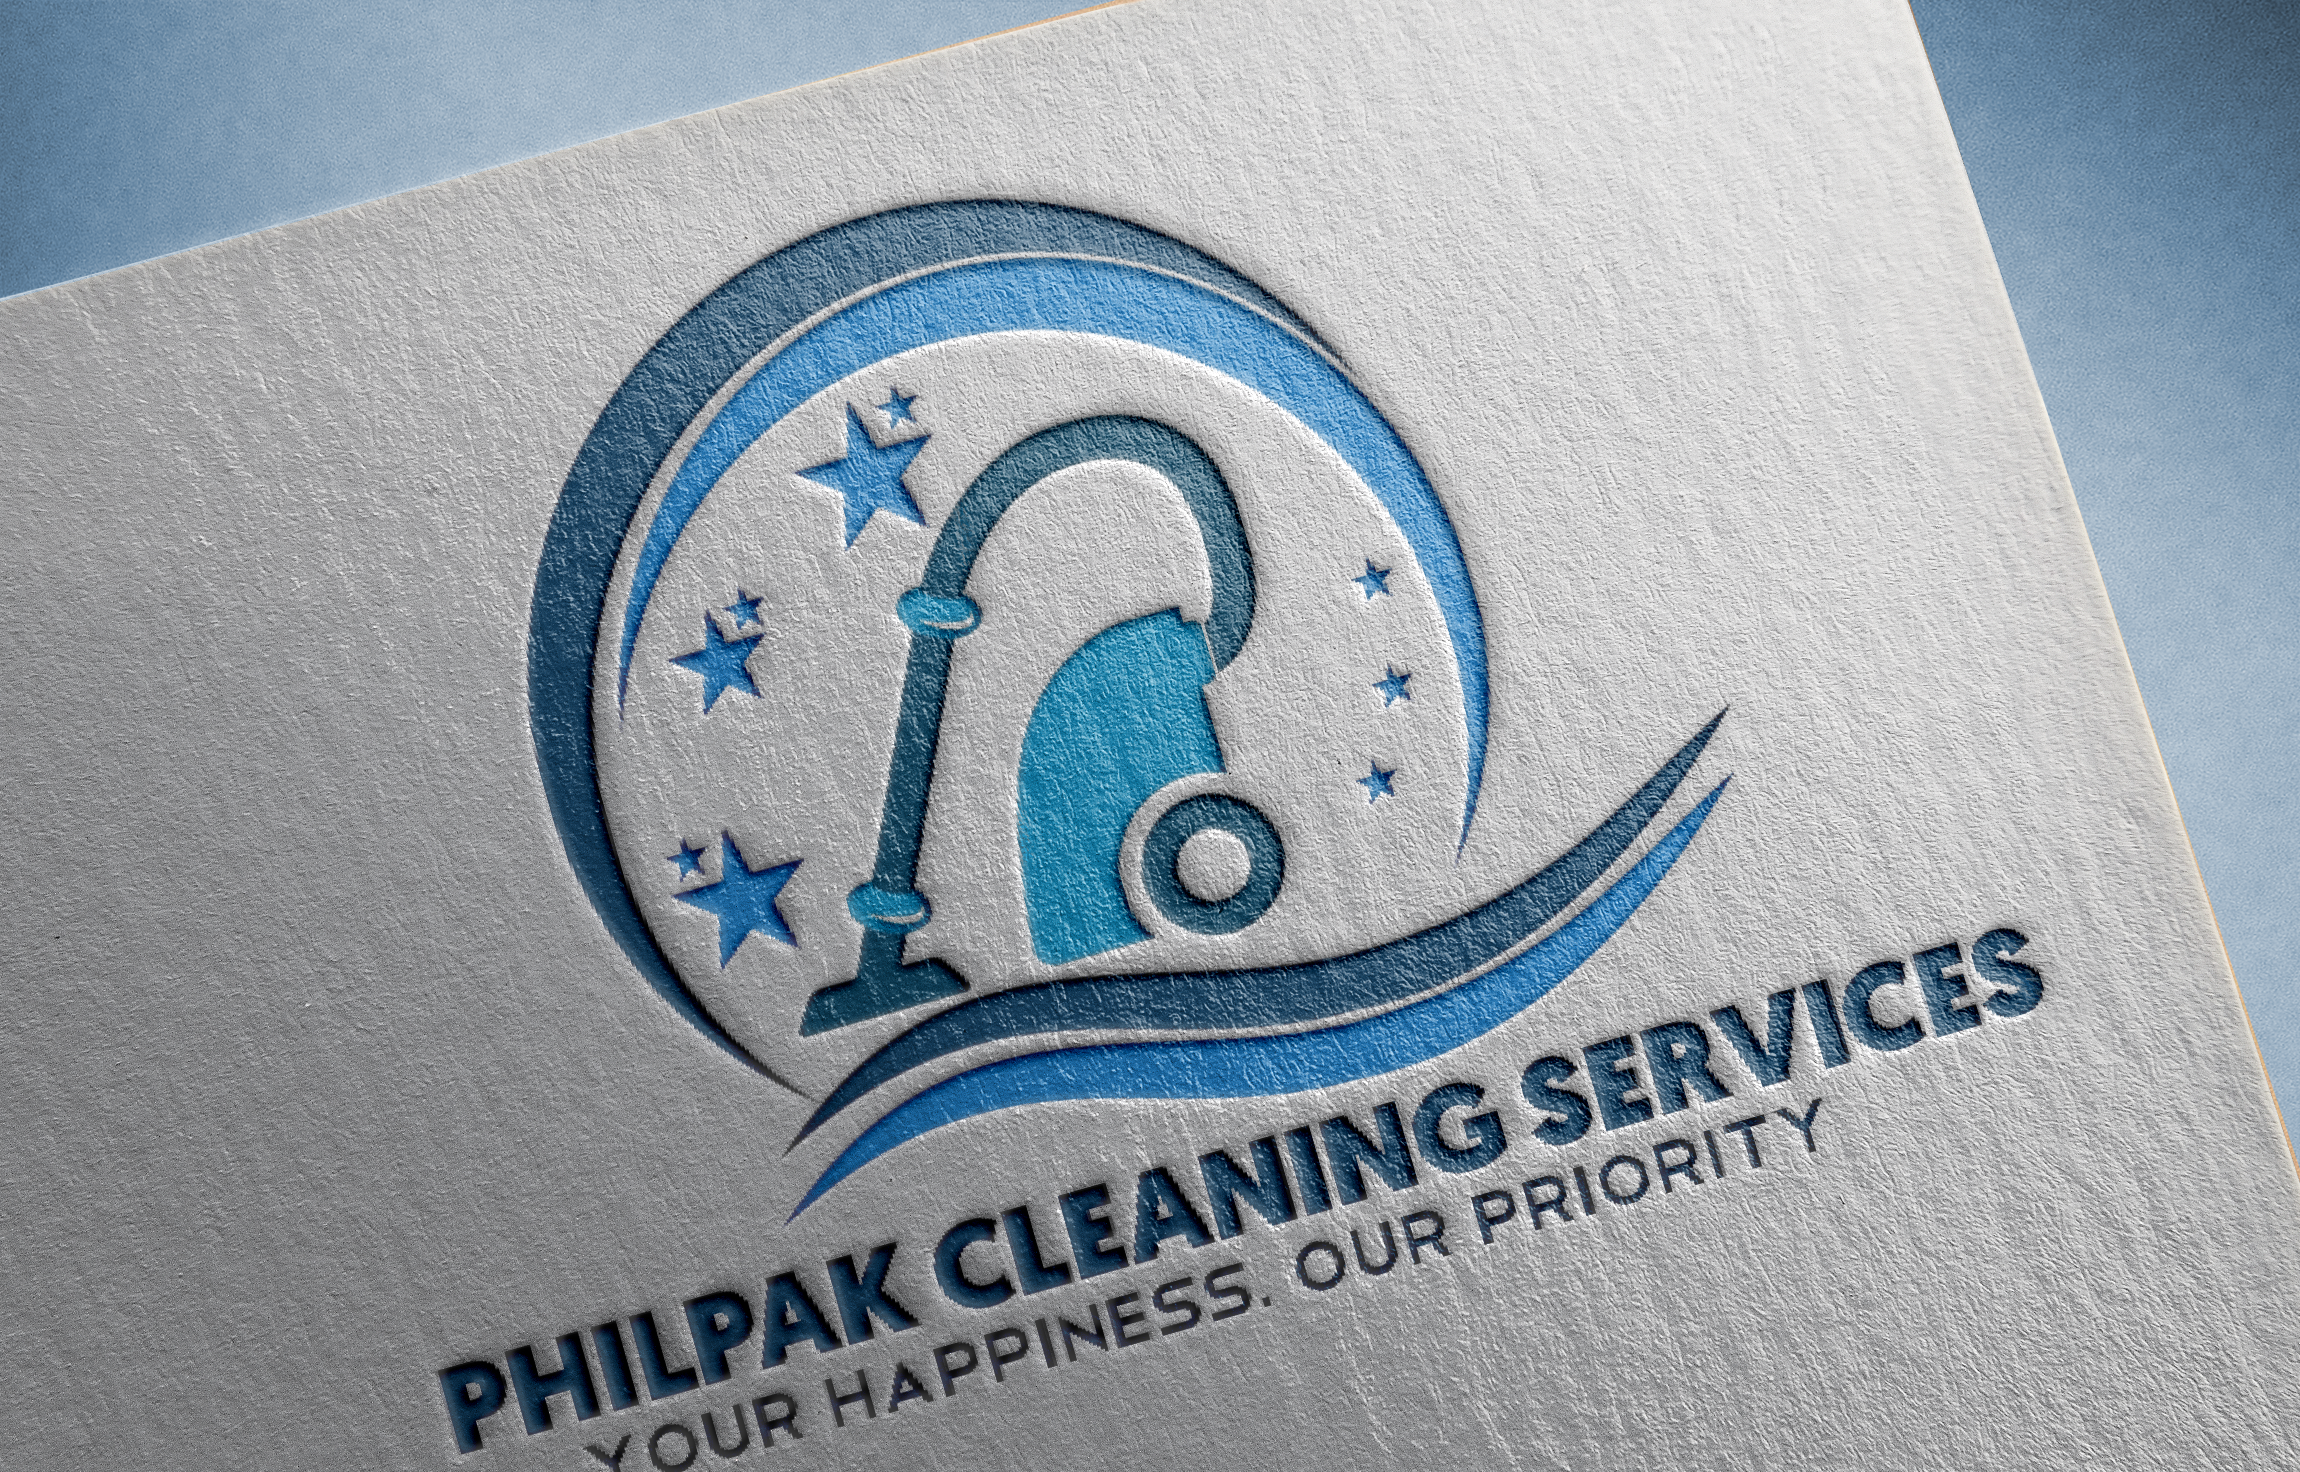 Philpak Cleaning